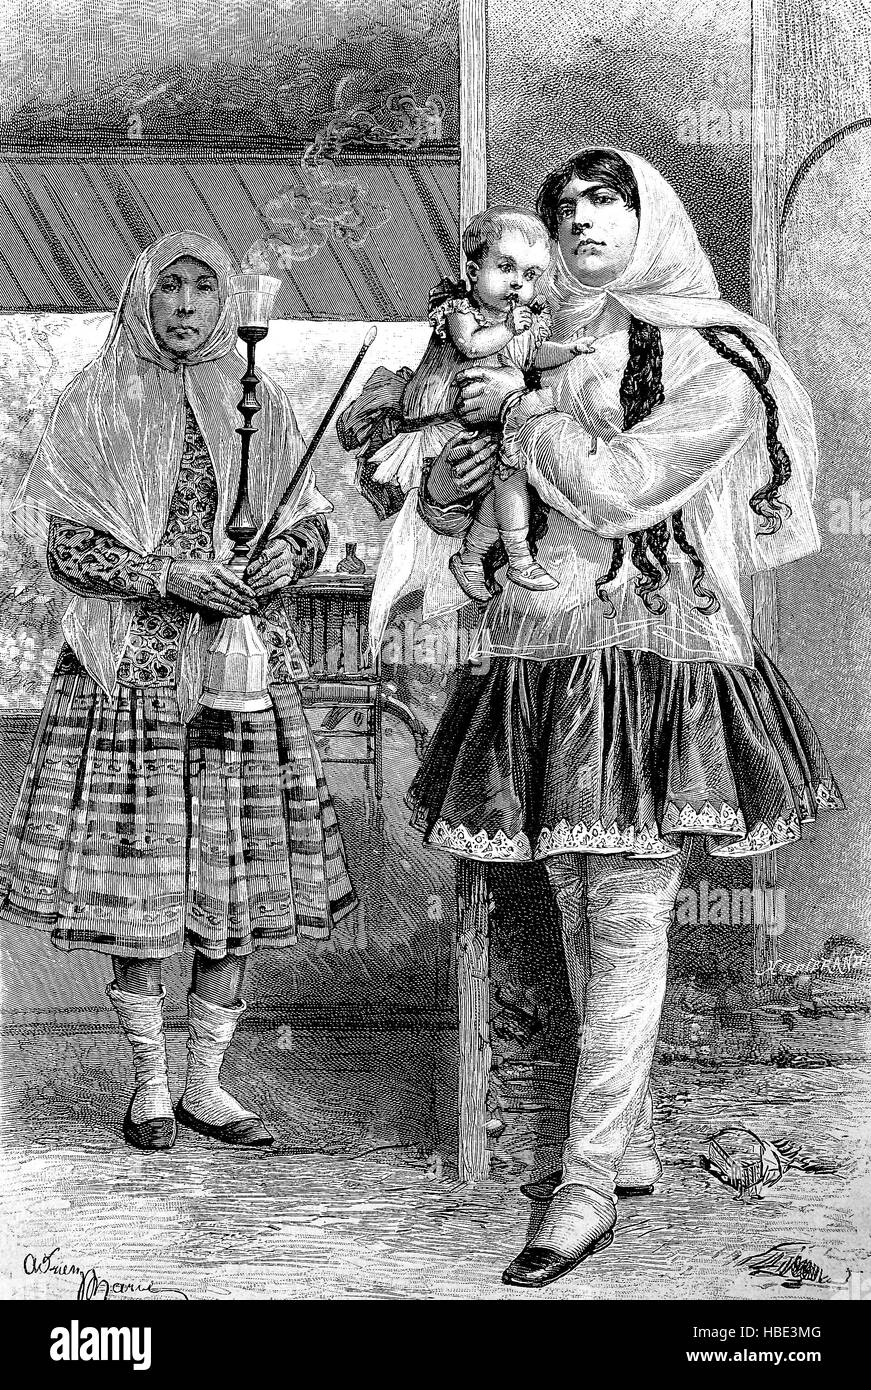 AMME in einem muslimischen Land, Kurdistan, im 19. Jahrhundert, Illustration, Holzschnitt aus dem Jahr 1880 Stockfoto